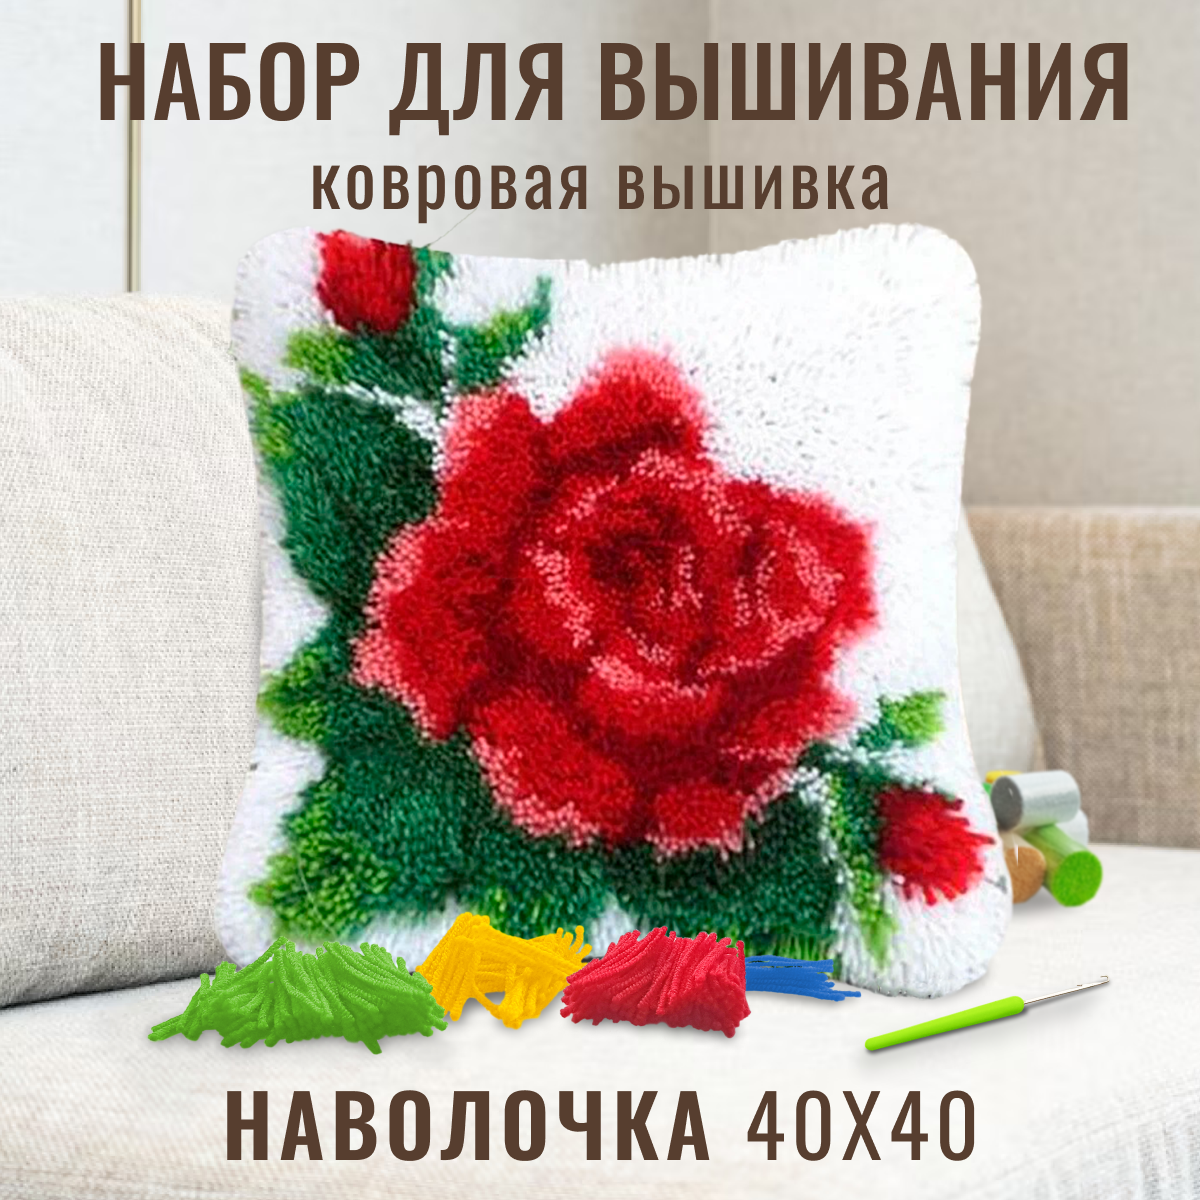 Ковровая вышивка набор для вышивания подушки размером 40х40 см ZD-413 Красная роза